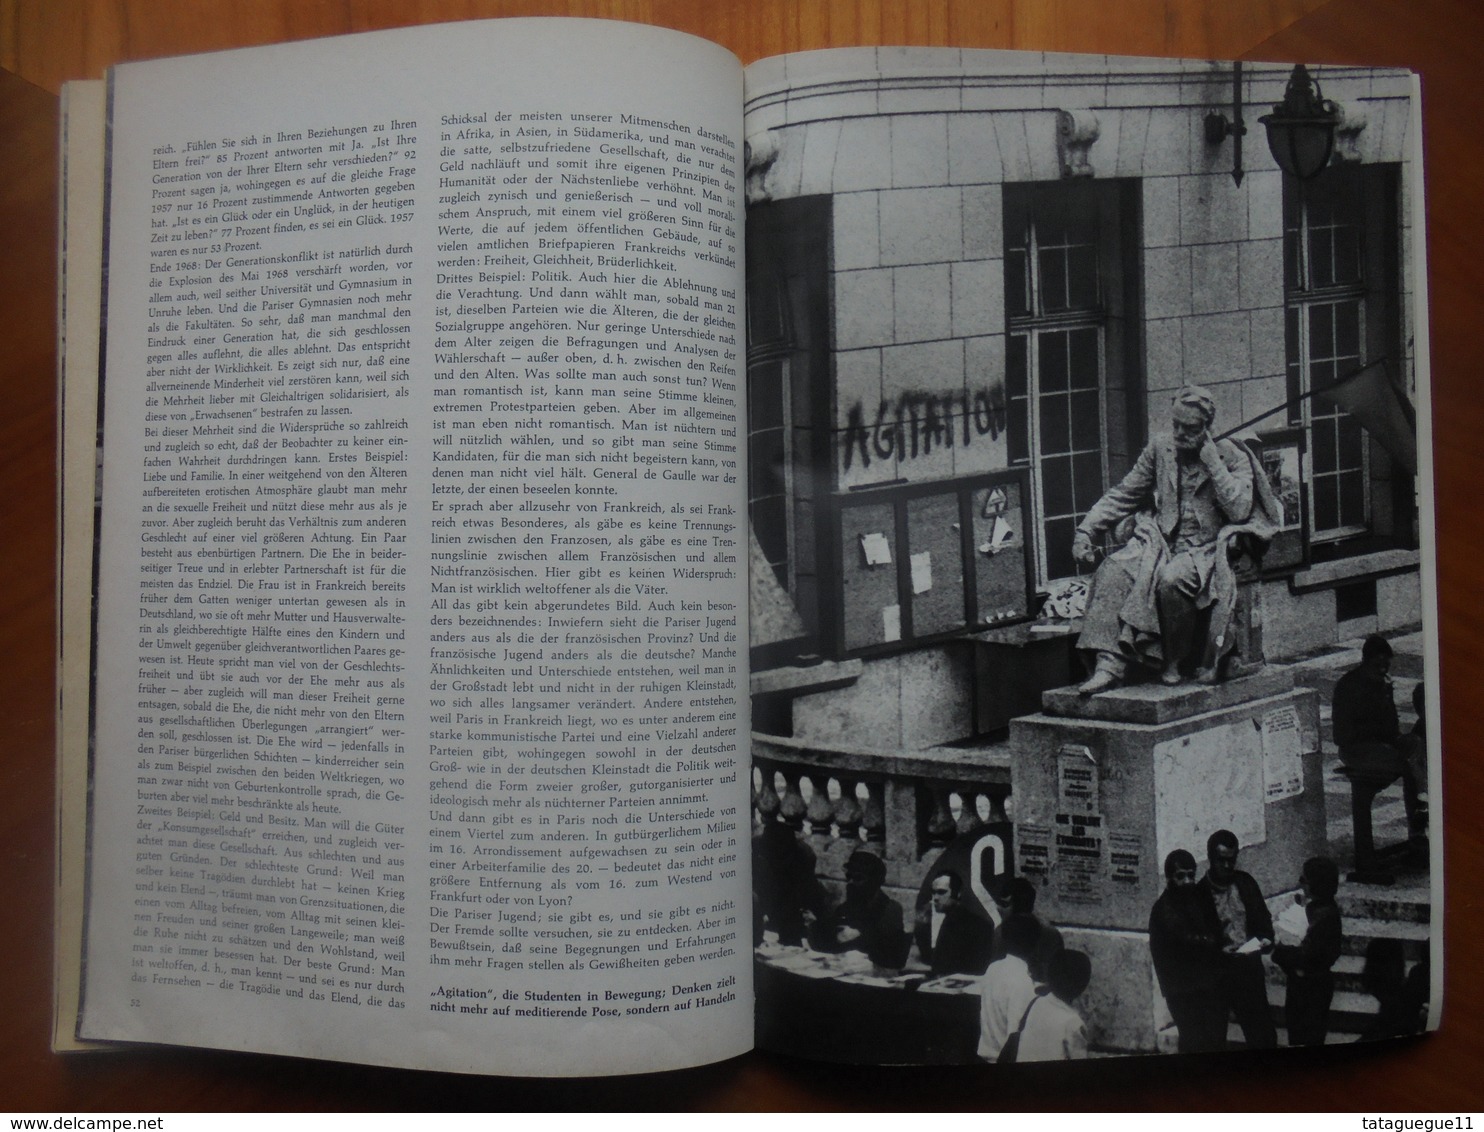 Ancien - Livre touristique MERIAN Paris 1969 (En allemand)